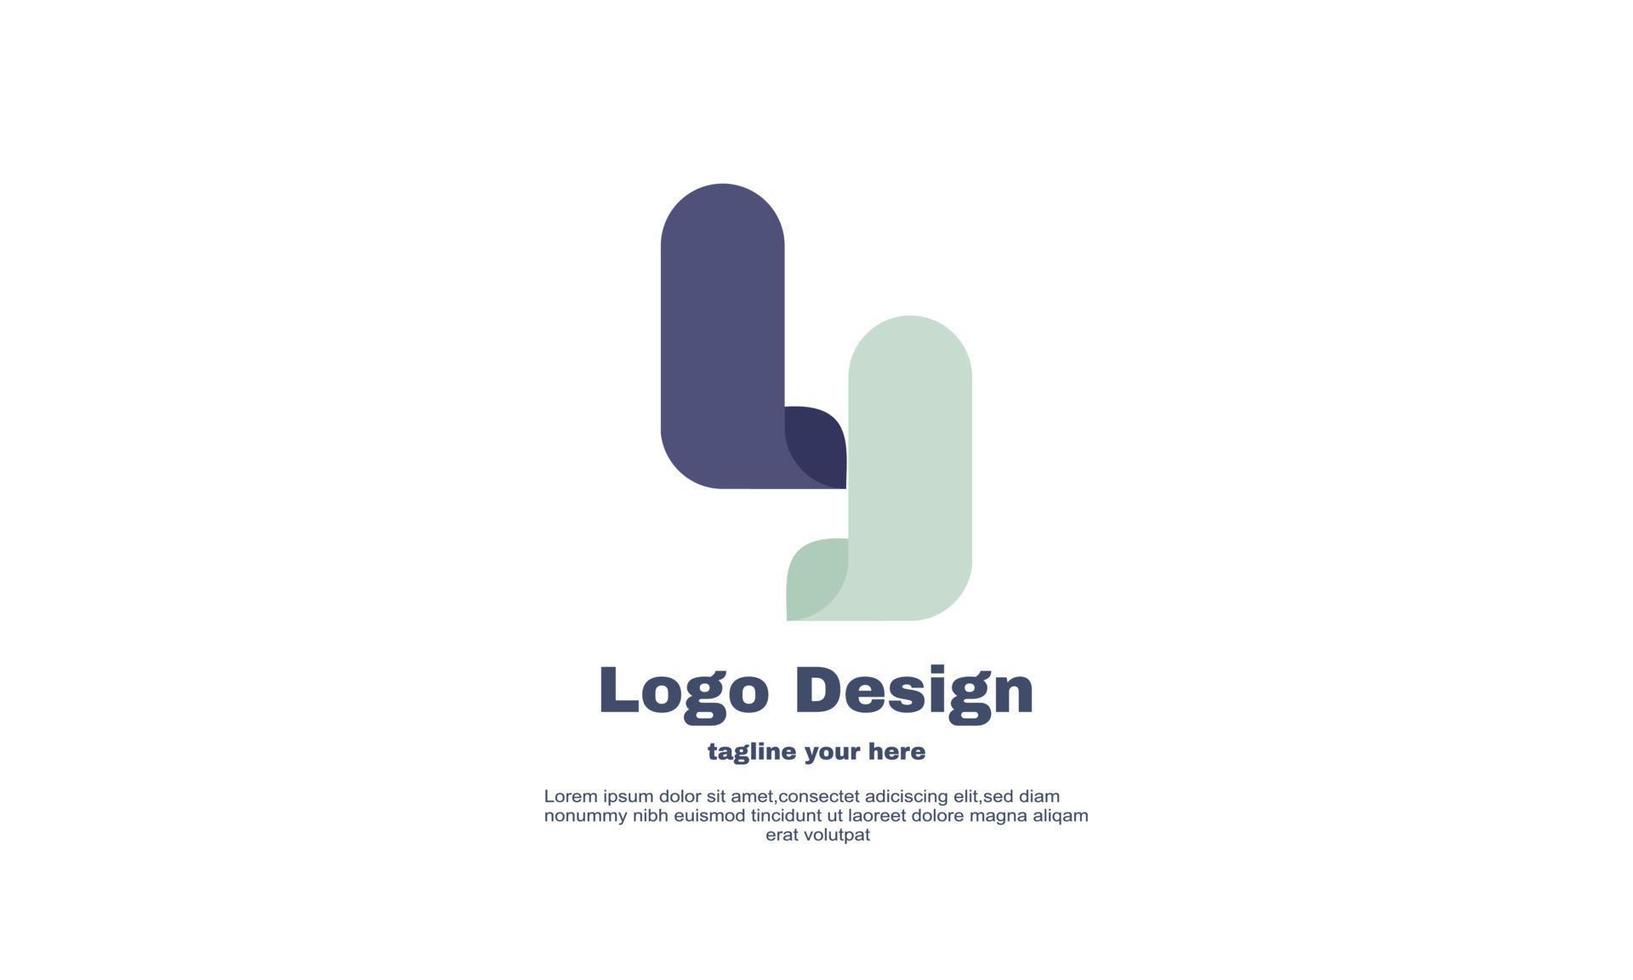 einzigartiges y-Buchstaben-Logo, Vektorgrafik, abstraktes Symboldesign, isoliert auf vektor